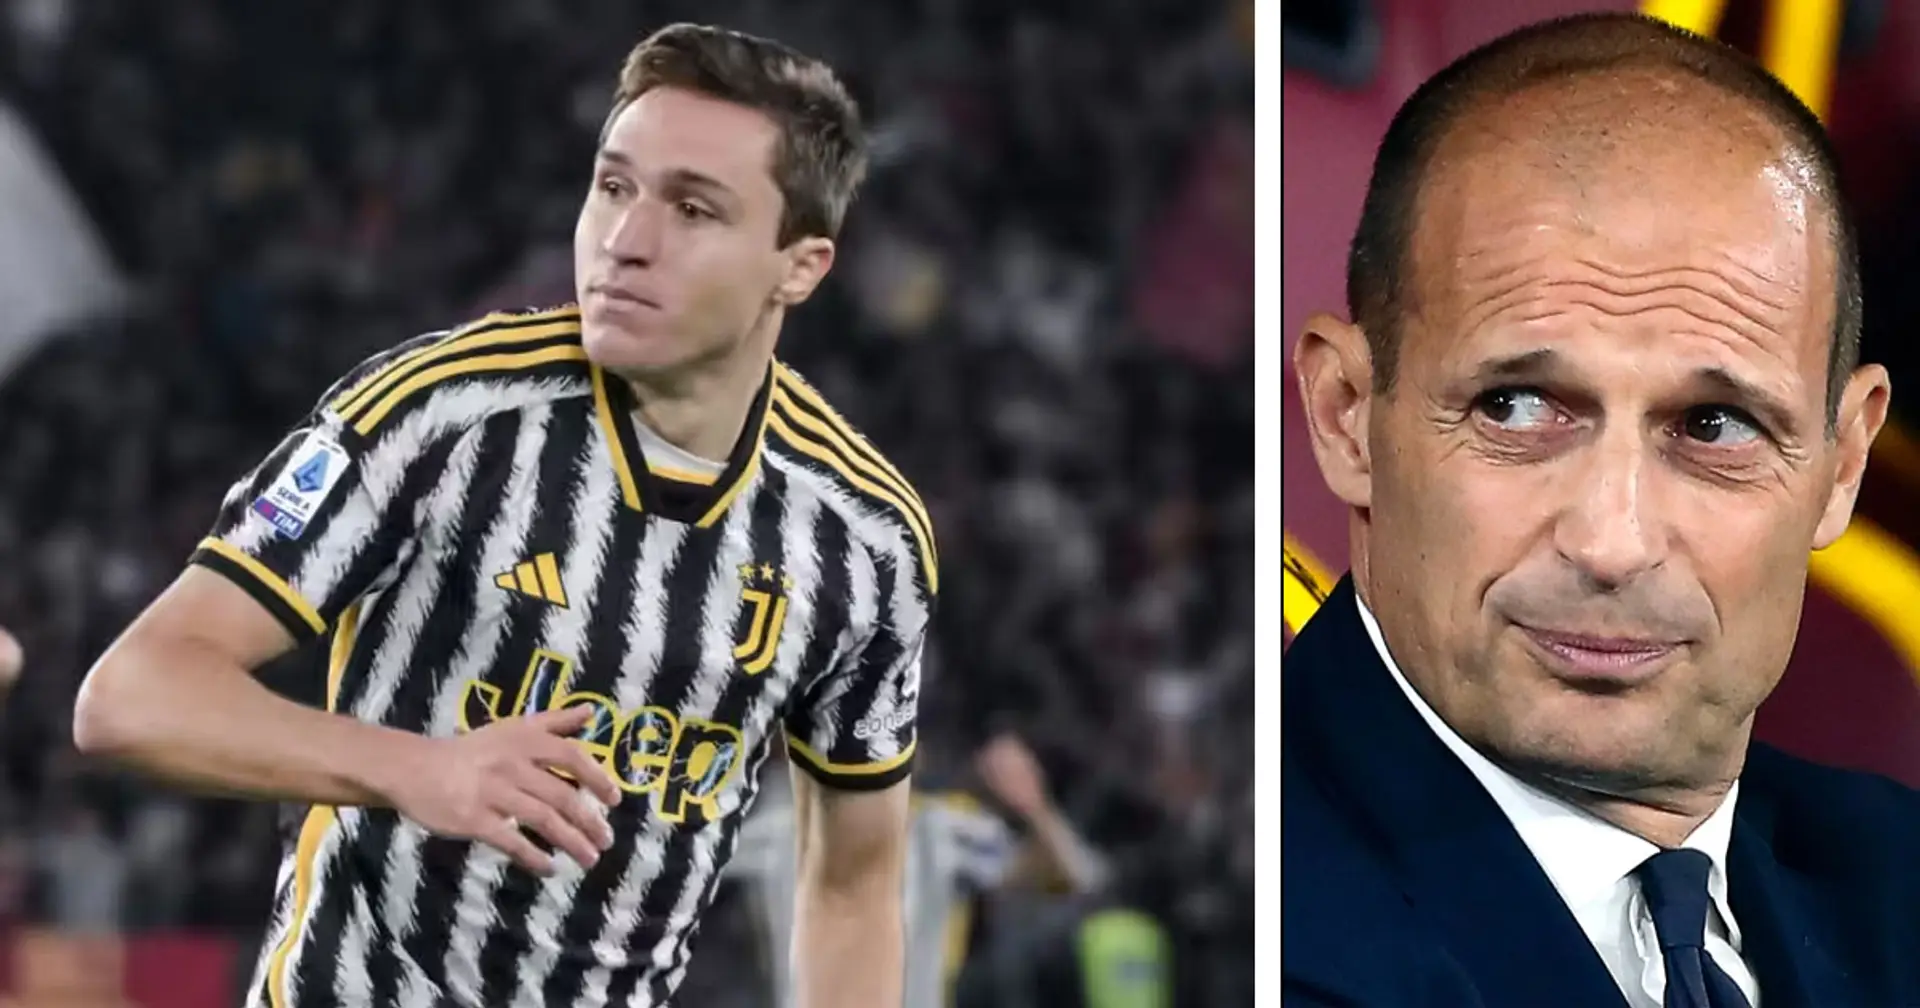 "Un crimine al gioco del calcio", una mossa di Allegri contro la Roma criticata pesantemente dai tifosi della Juventus